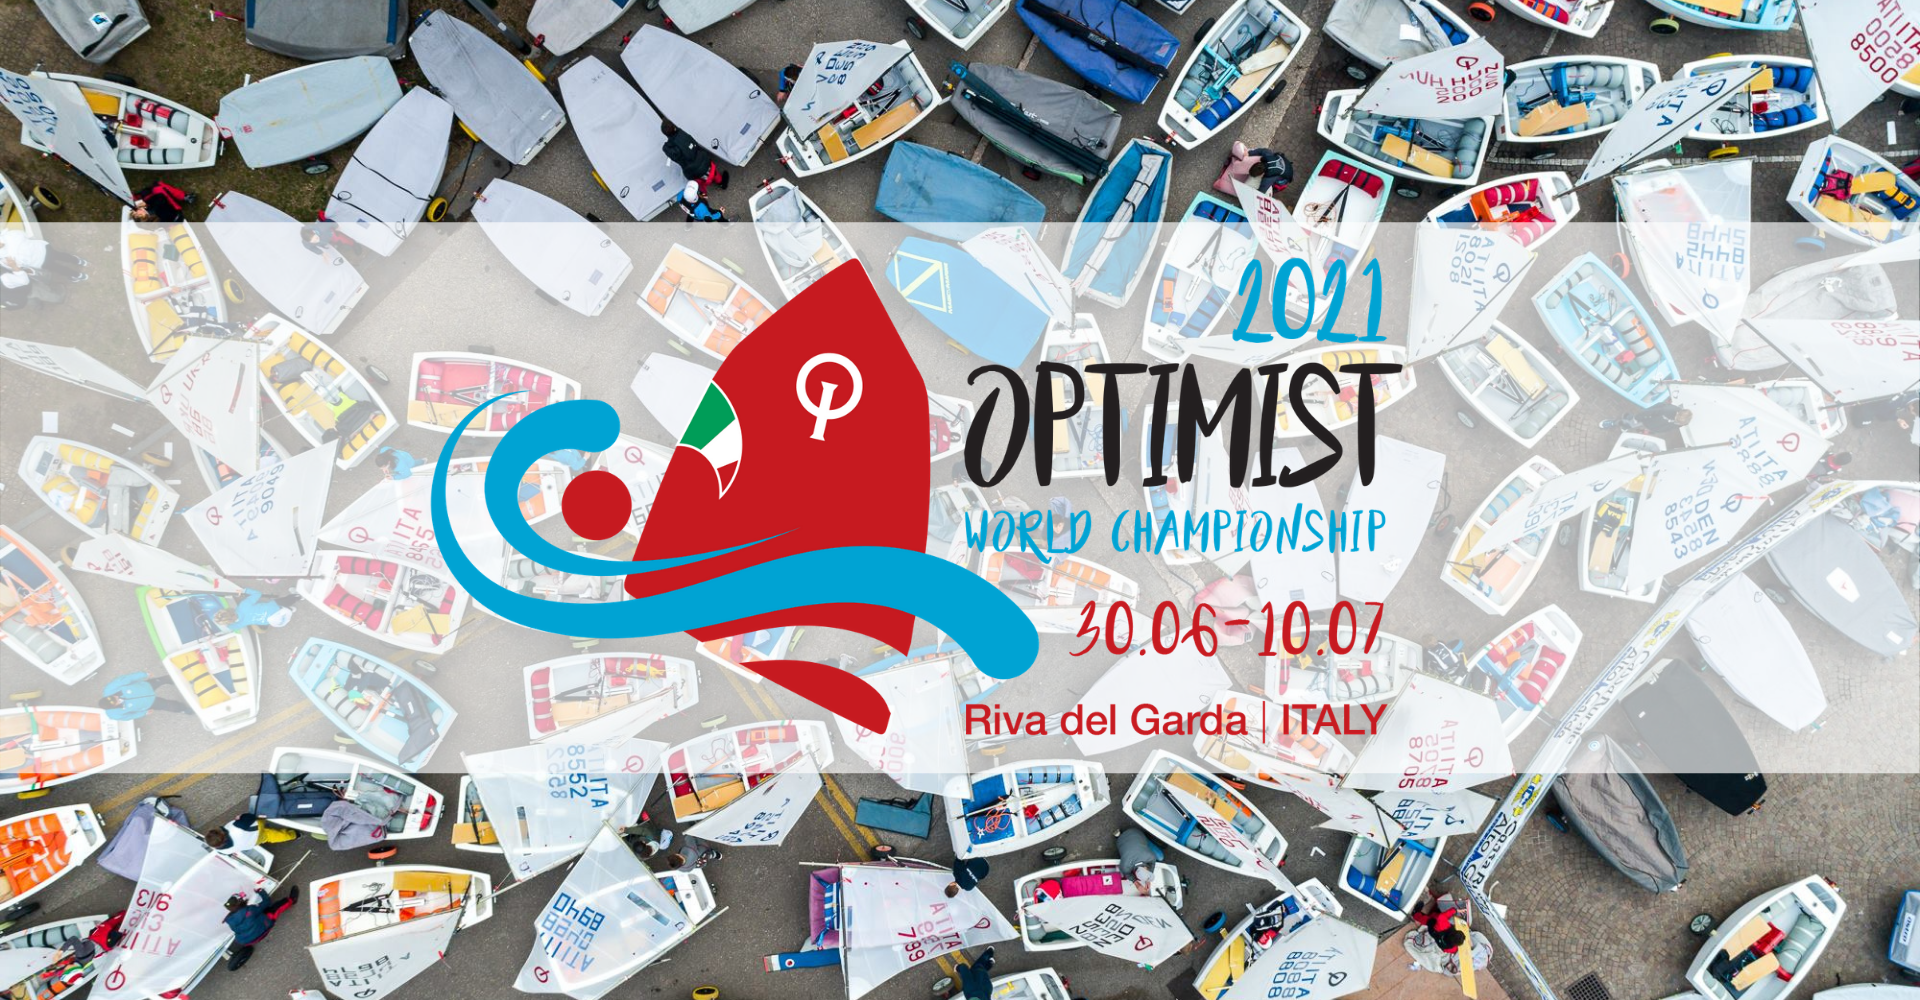 Campionato del Mondo Optimist, già cinquanta Nazioni confermate per l'edizione 2021